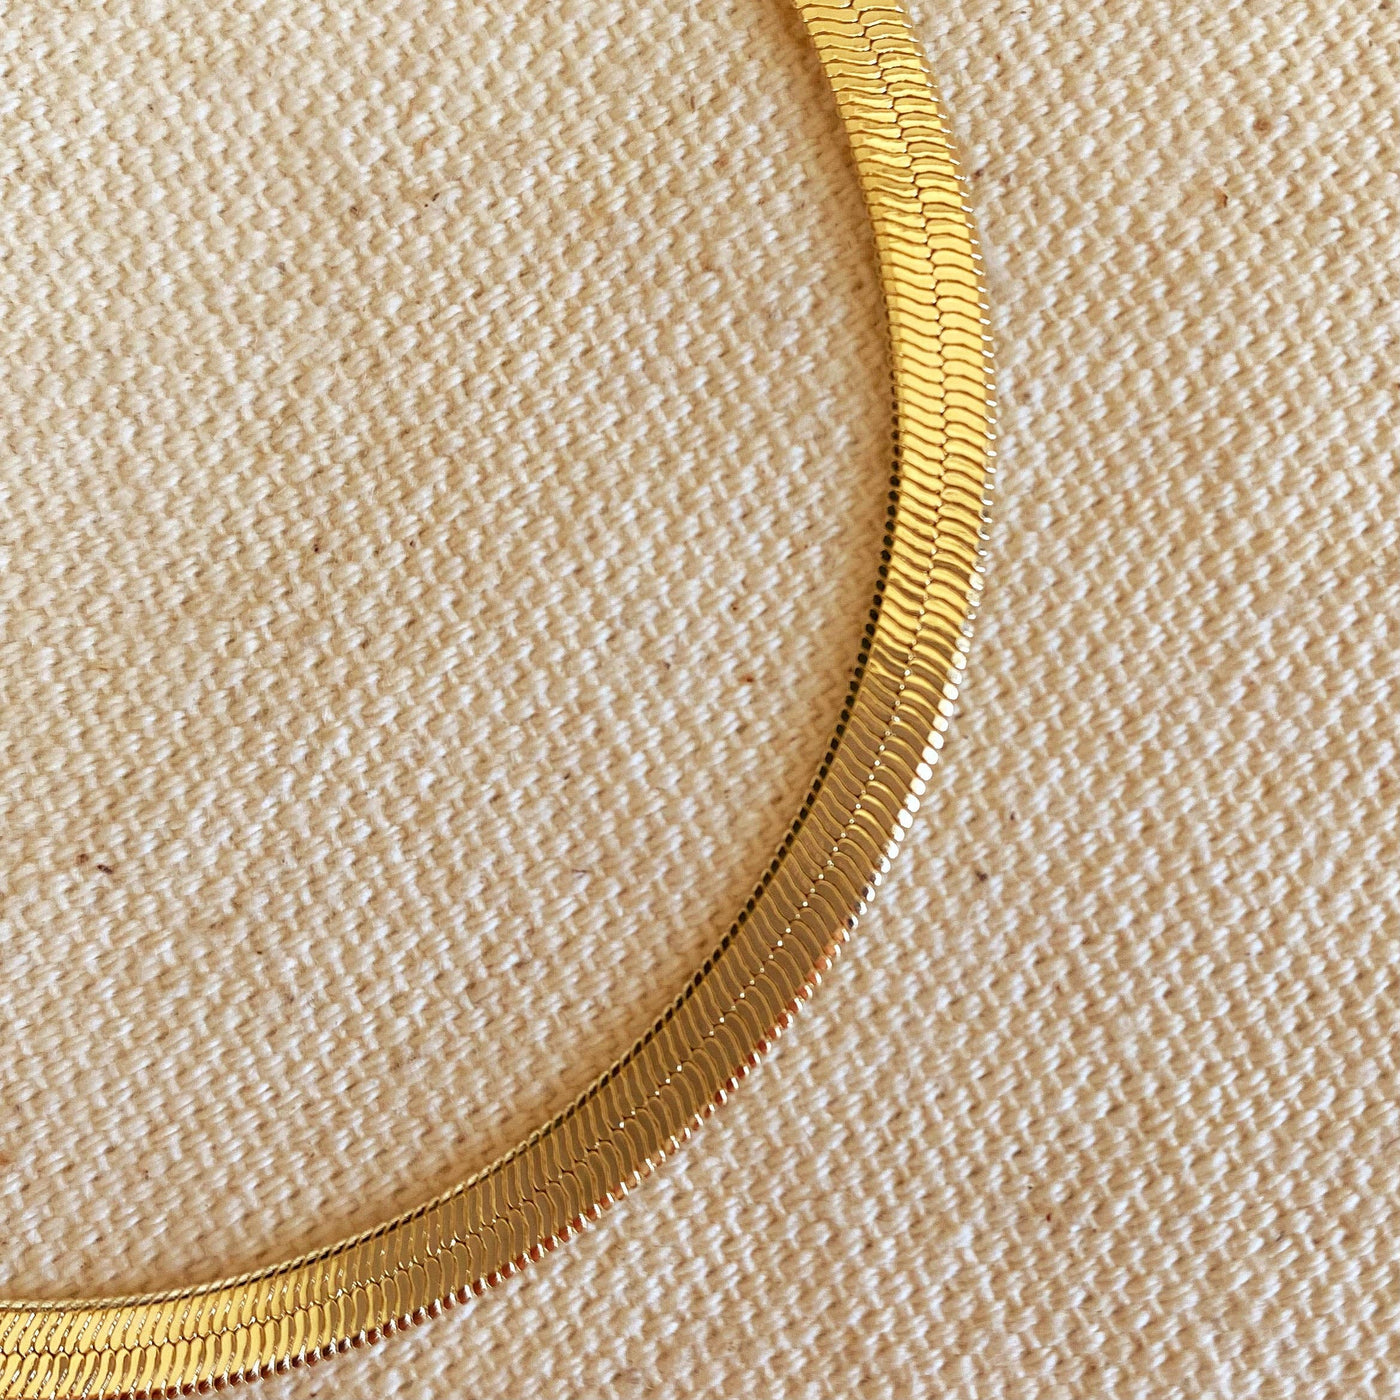 18k Gold Filled 4mm Herringbone Bracelet